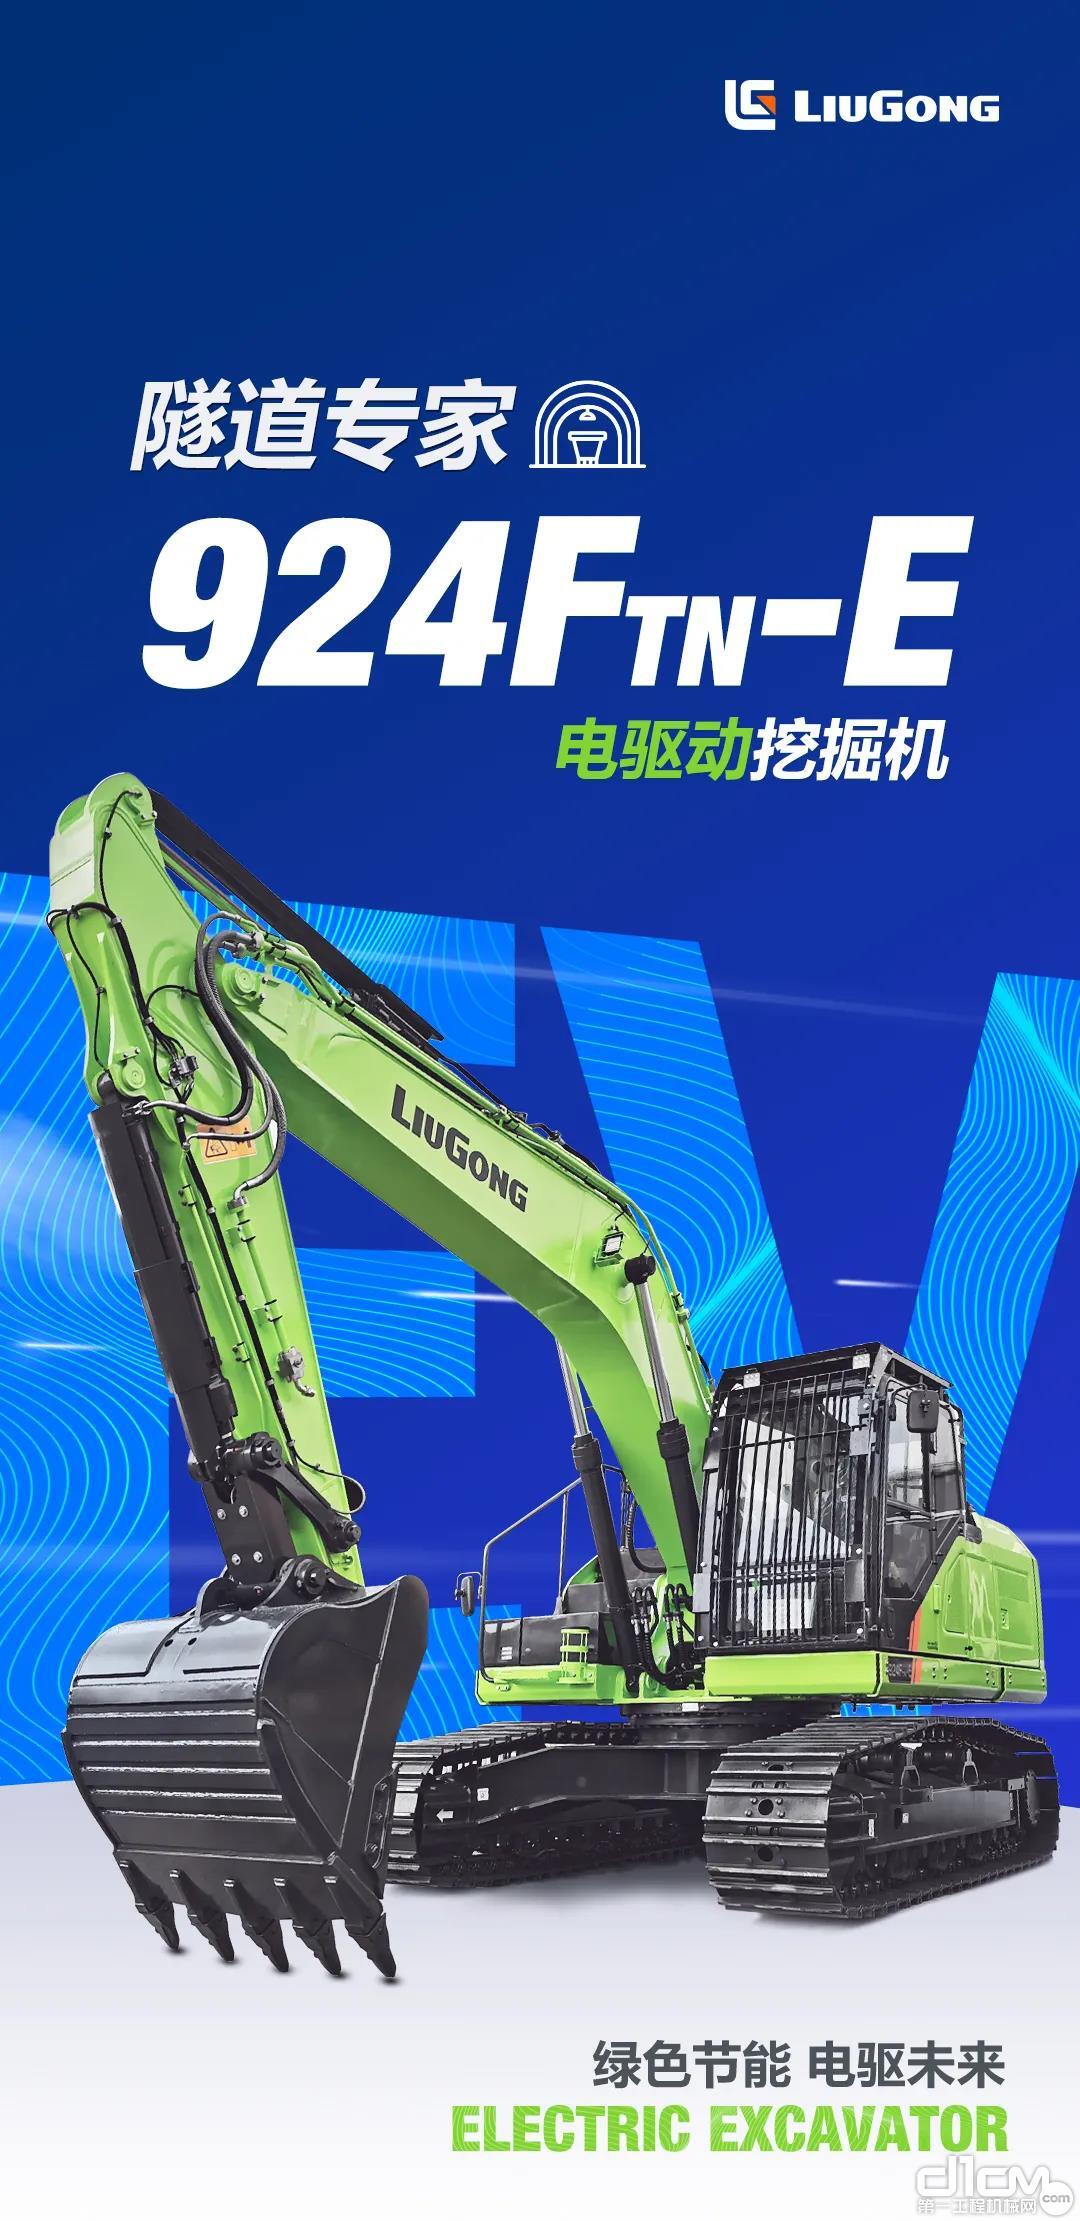 柳工全新924FTN-E纯电动挖掘机